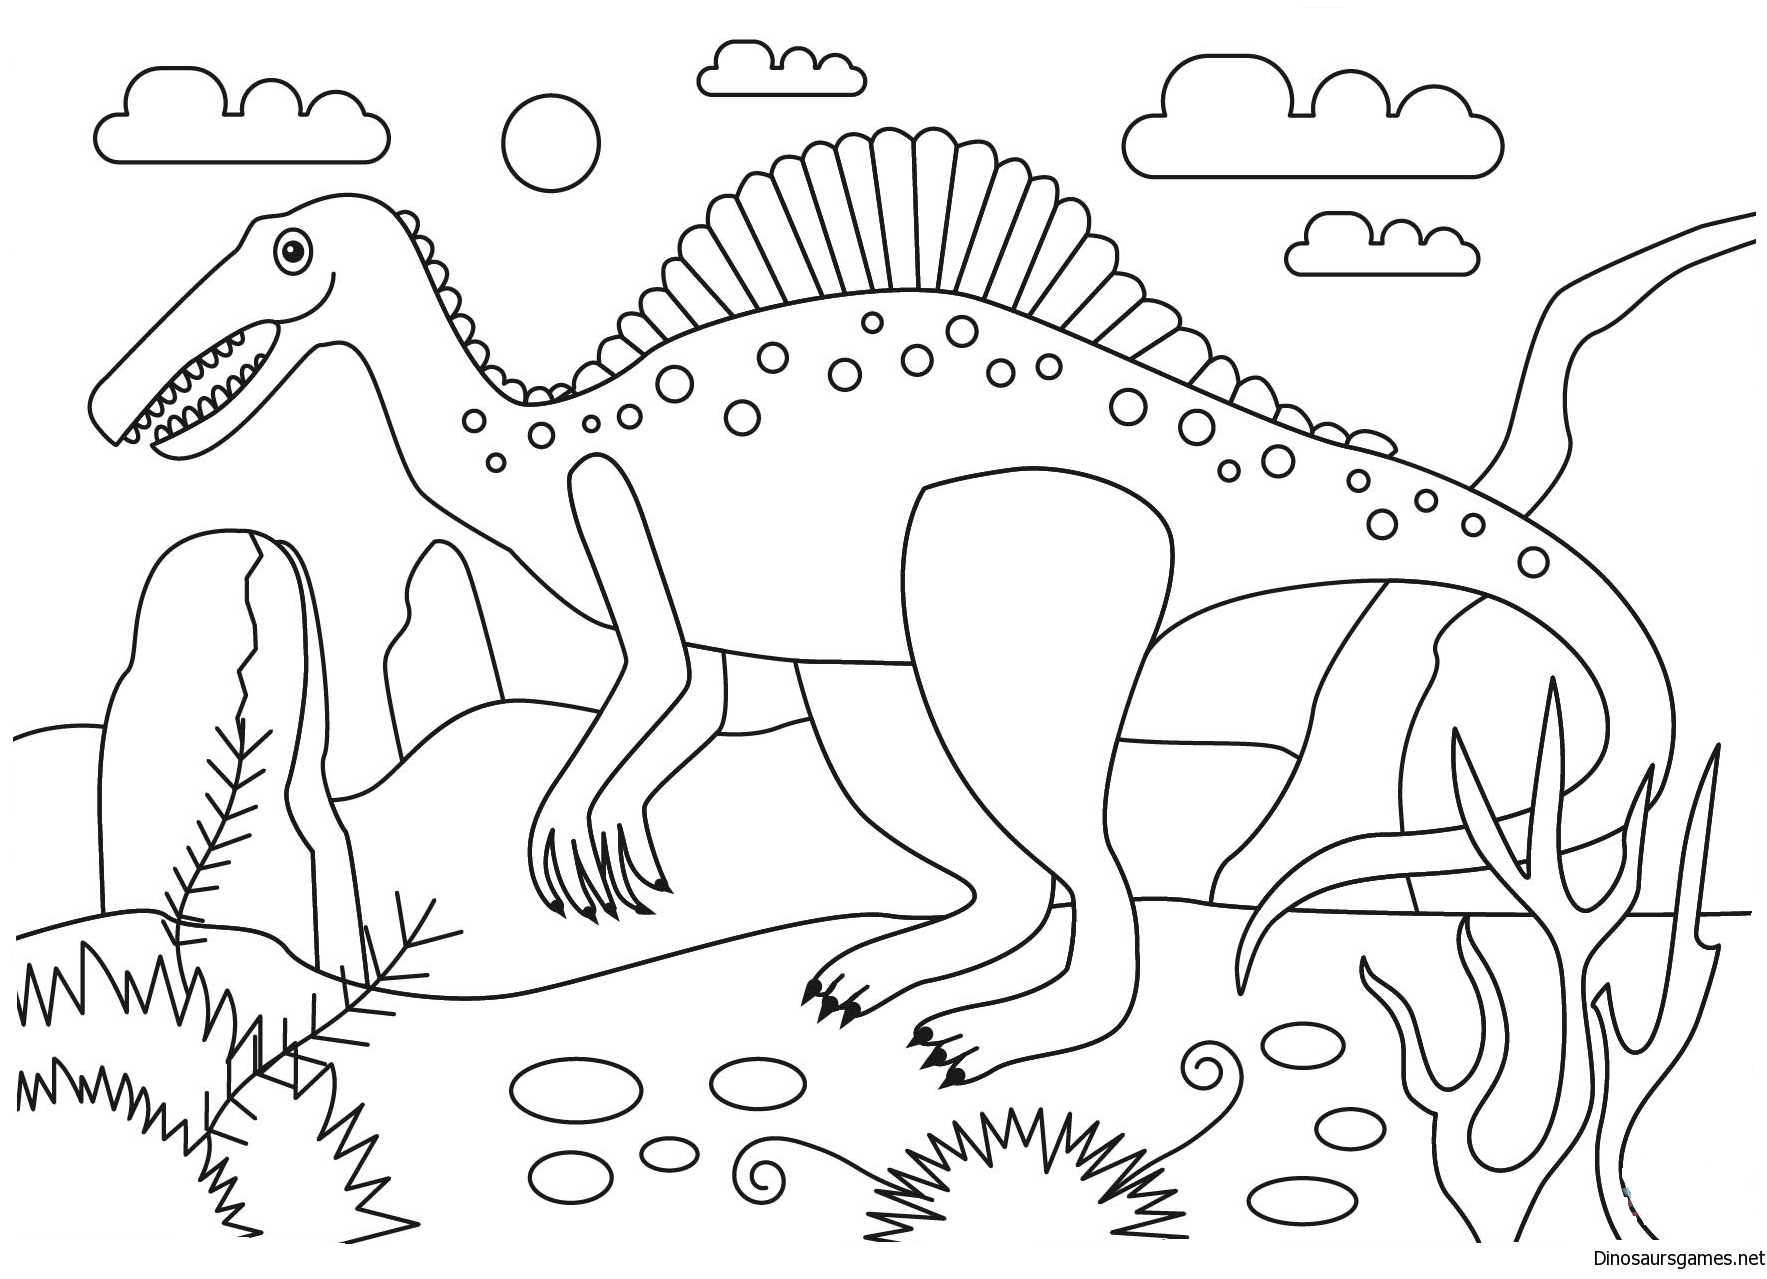 Раскраски поезд динозавров для детей высокого качества скачать и распечатать